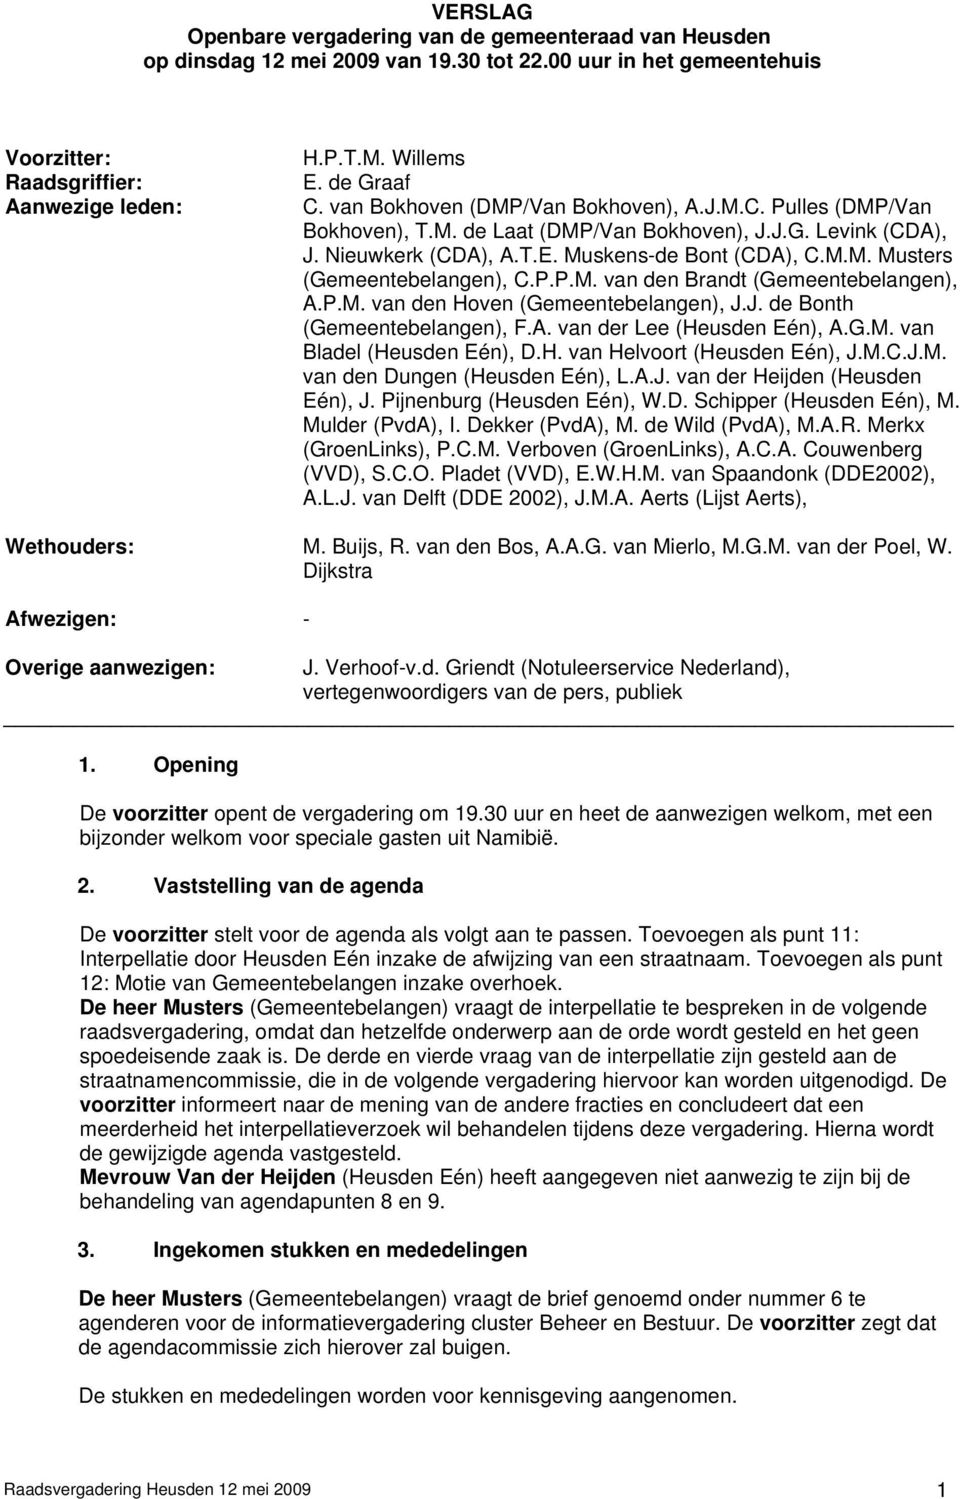 P.P.M. van den Brandt (Gemeentebelangen), A.P.M. van den Hoven (Gemeentebelangen), J.J. de Bonth (Gemeentebelangen), F.A. van der Lee (Heusden Eén), A.G.M. van Bladel (Heusden Eén), D.H. van Helvoort (Heusden Eén), J.